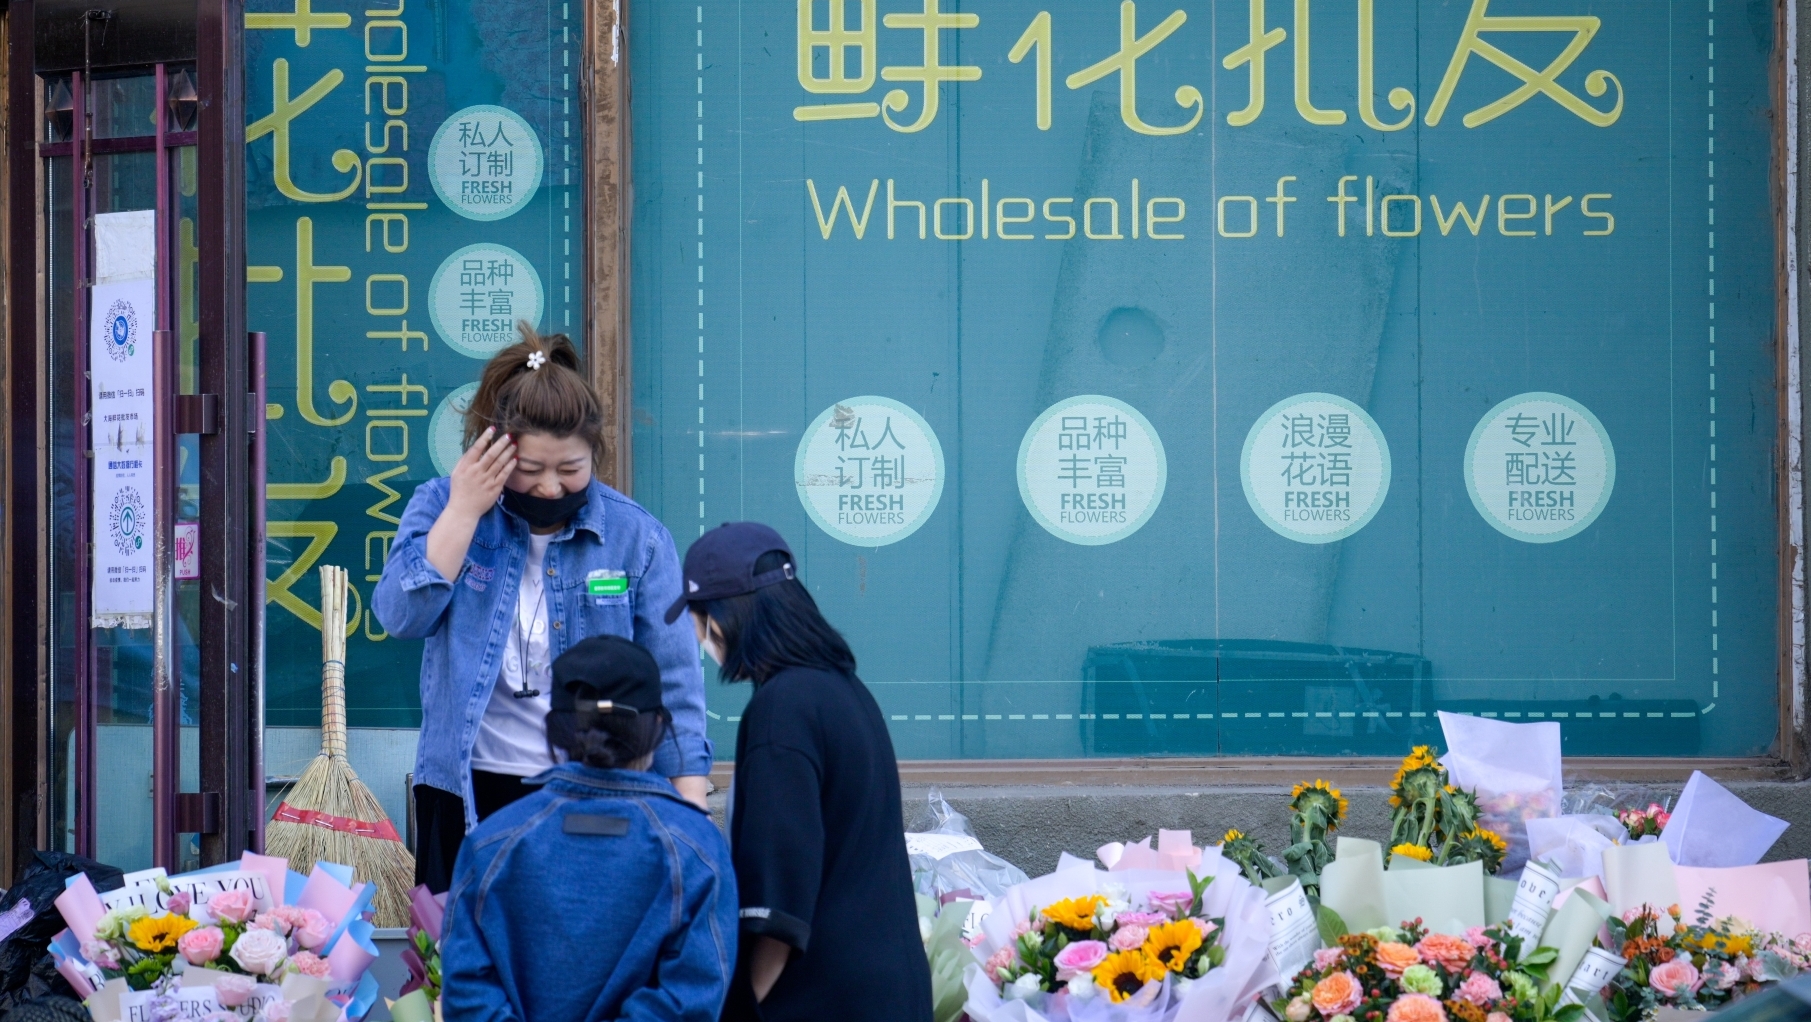 5月8日母亲节，哈尔滨市花卉市场销售火爆。在南岗区鲜花批发市场，许多顾客早早就来到这里为母亲购买鲜花。
据了解，今年鲜花外送业务订单增多，尤其是老人不在身边的，由于疫情原因不能见面的，很多人选择外卖送花，在防疫的特殊时期，也要保持仪式感。